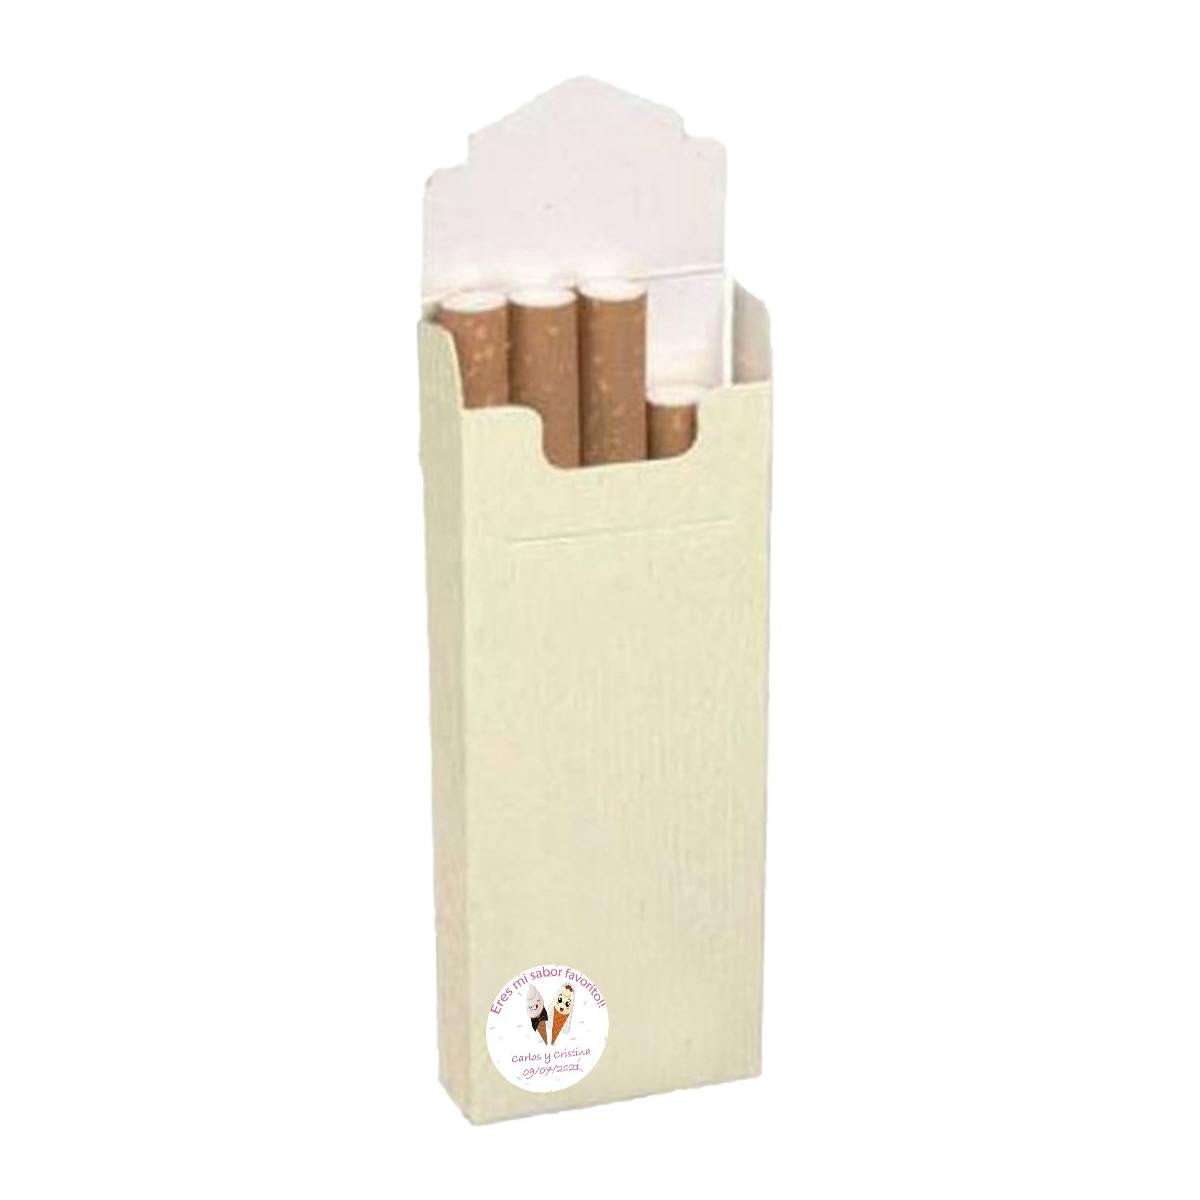 Caixas de tabaco para casamentos detalhes personalizados